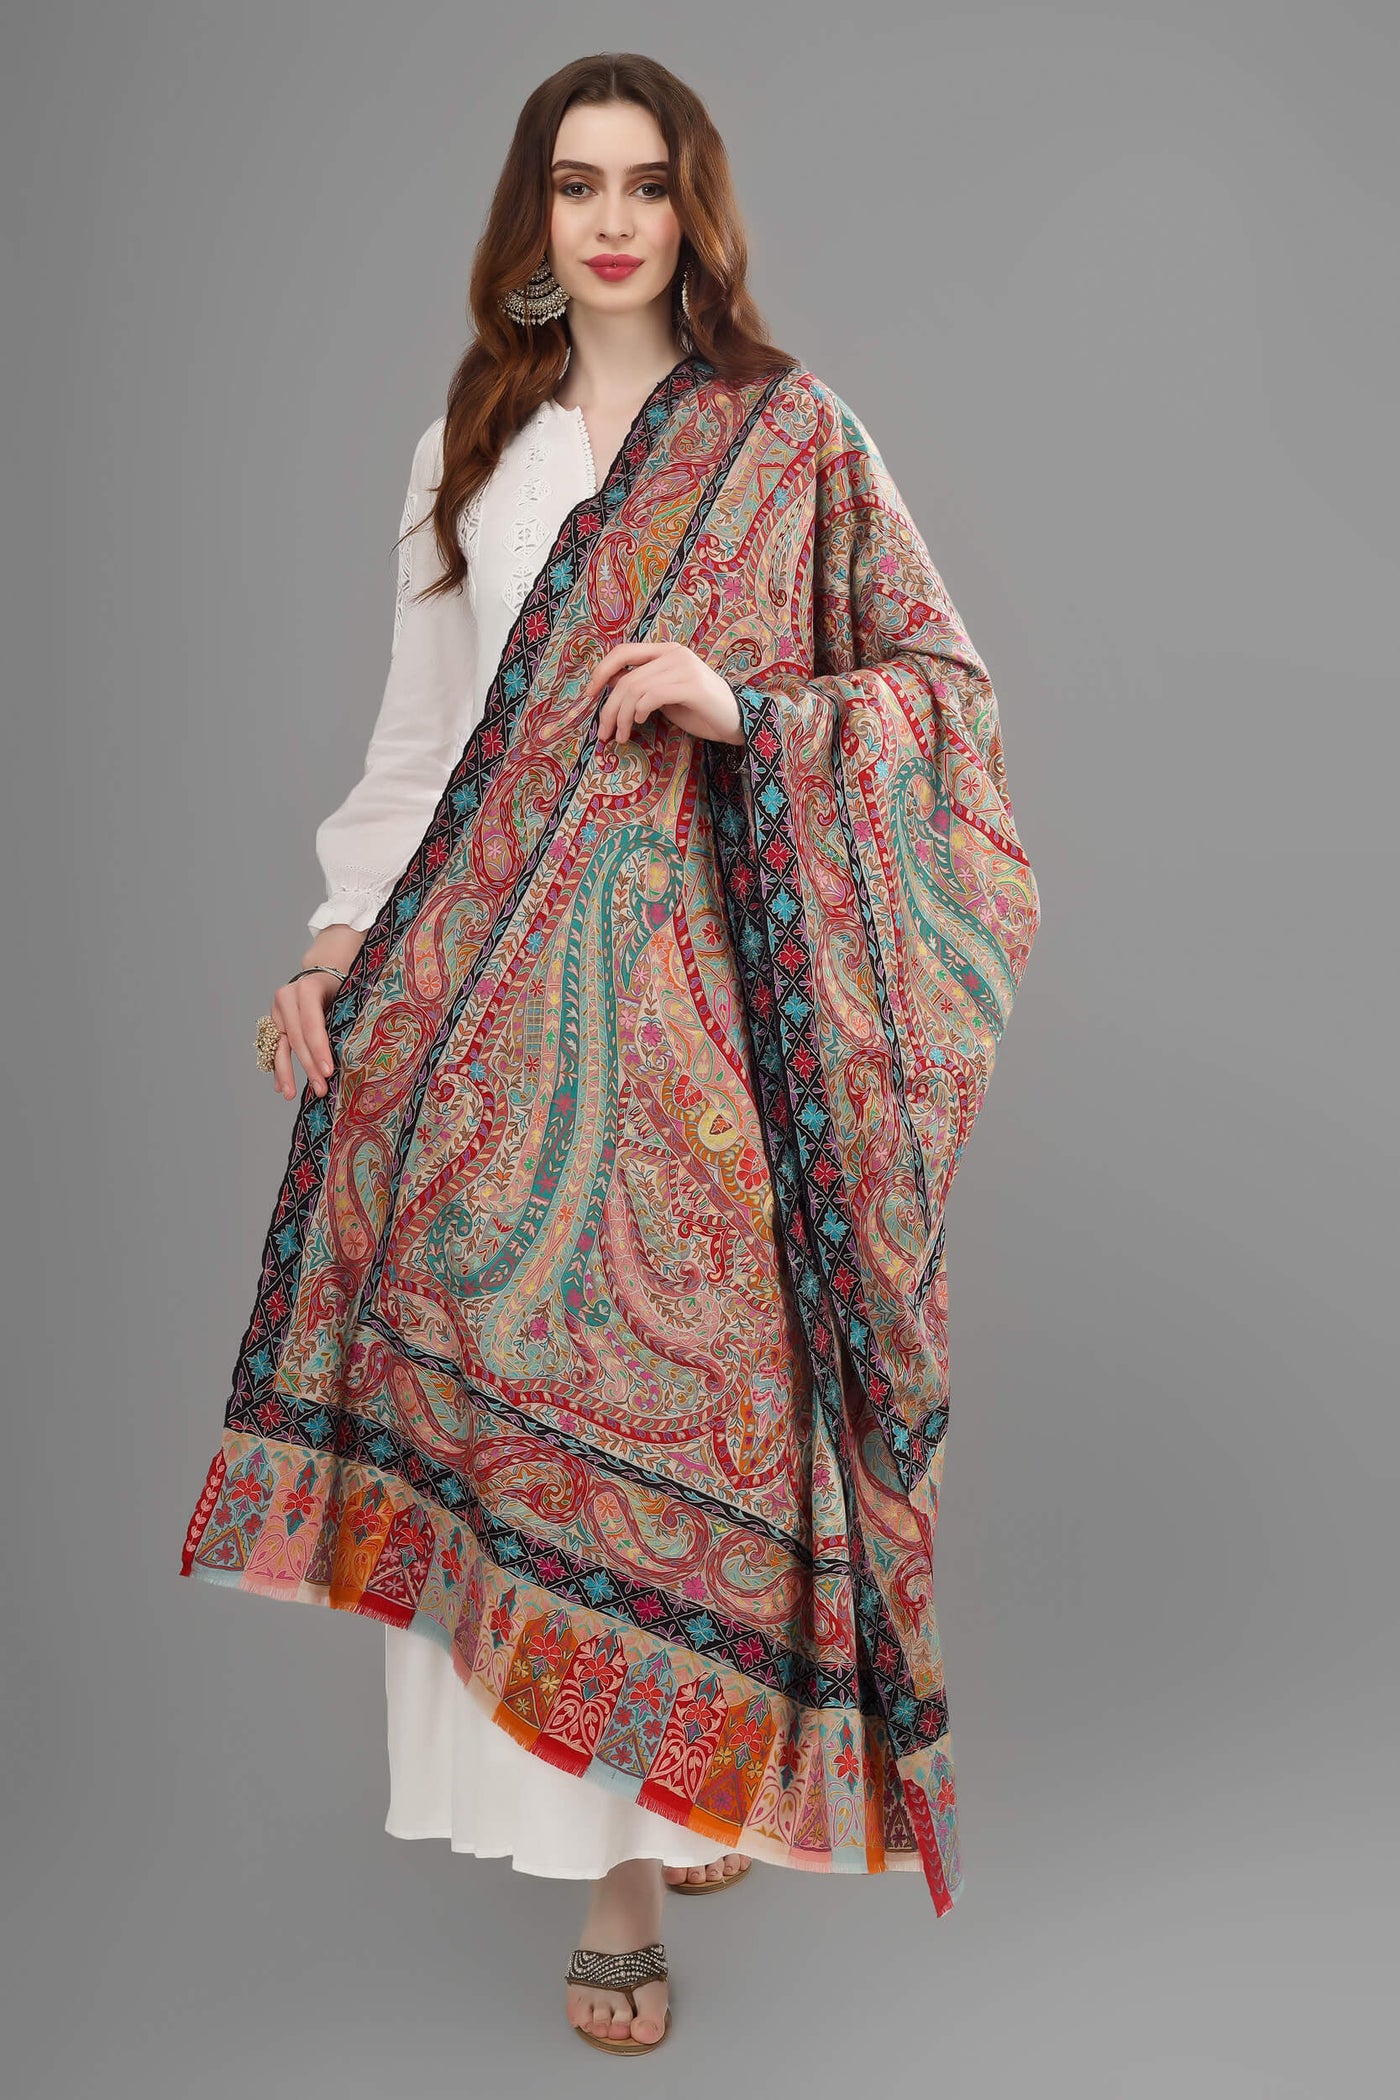 Pashmina Aabshar Kalamkari shawl